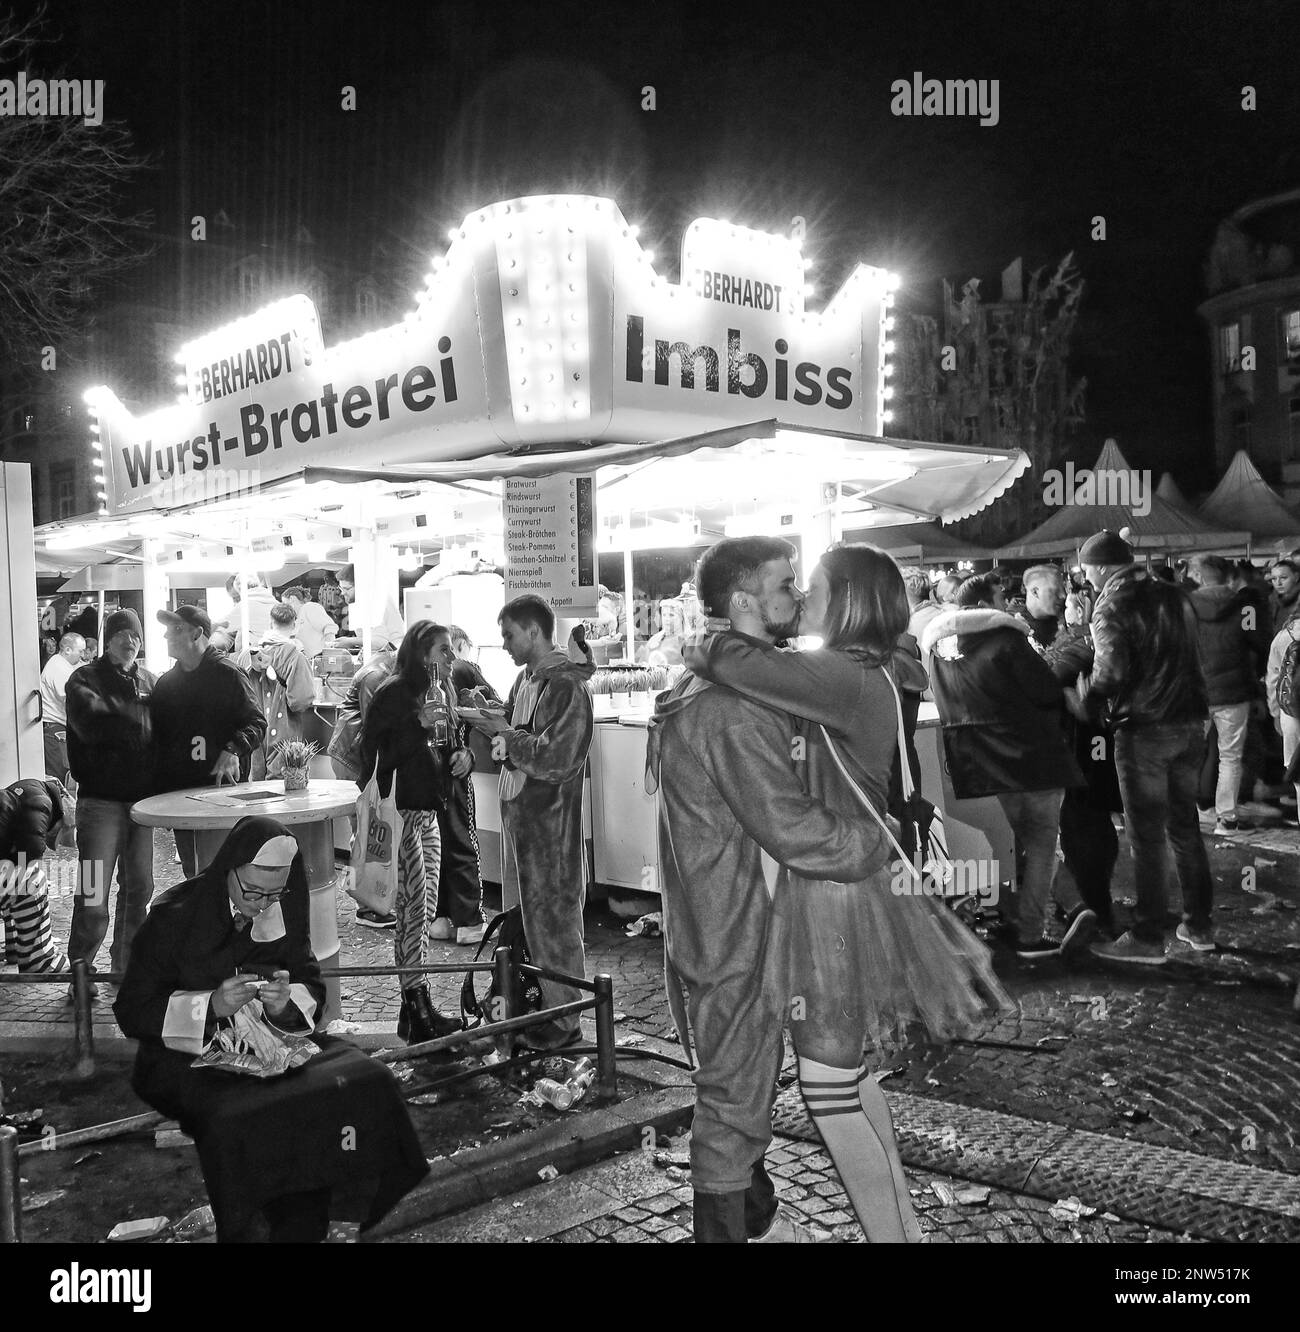 Abend in der Berhardt Wurst Braten Snack Stall, Wurst-Braterei Imbiss, Mainz, Deutschland - Snack und entspannend Stockfoto